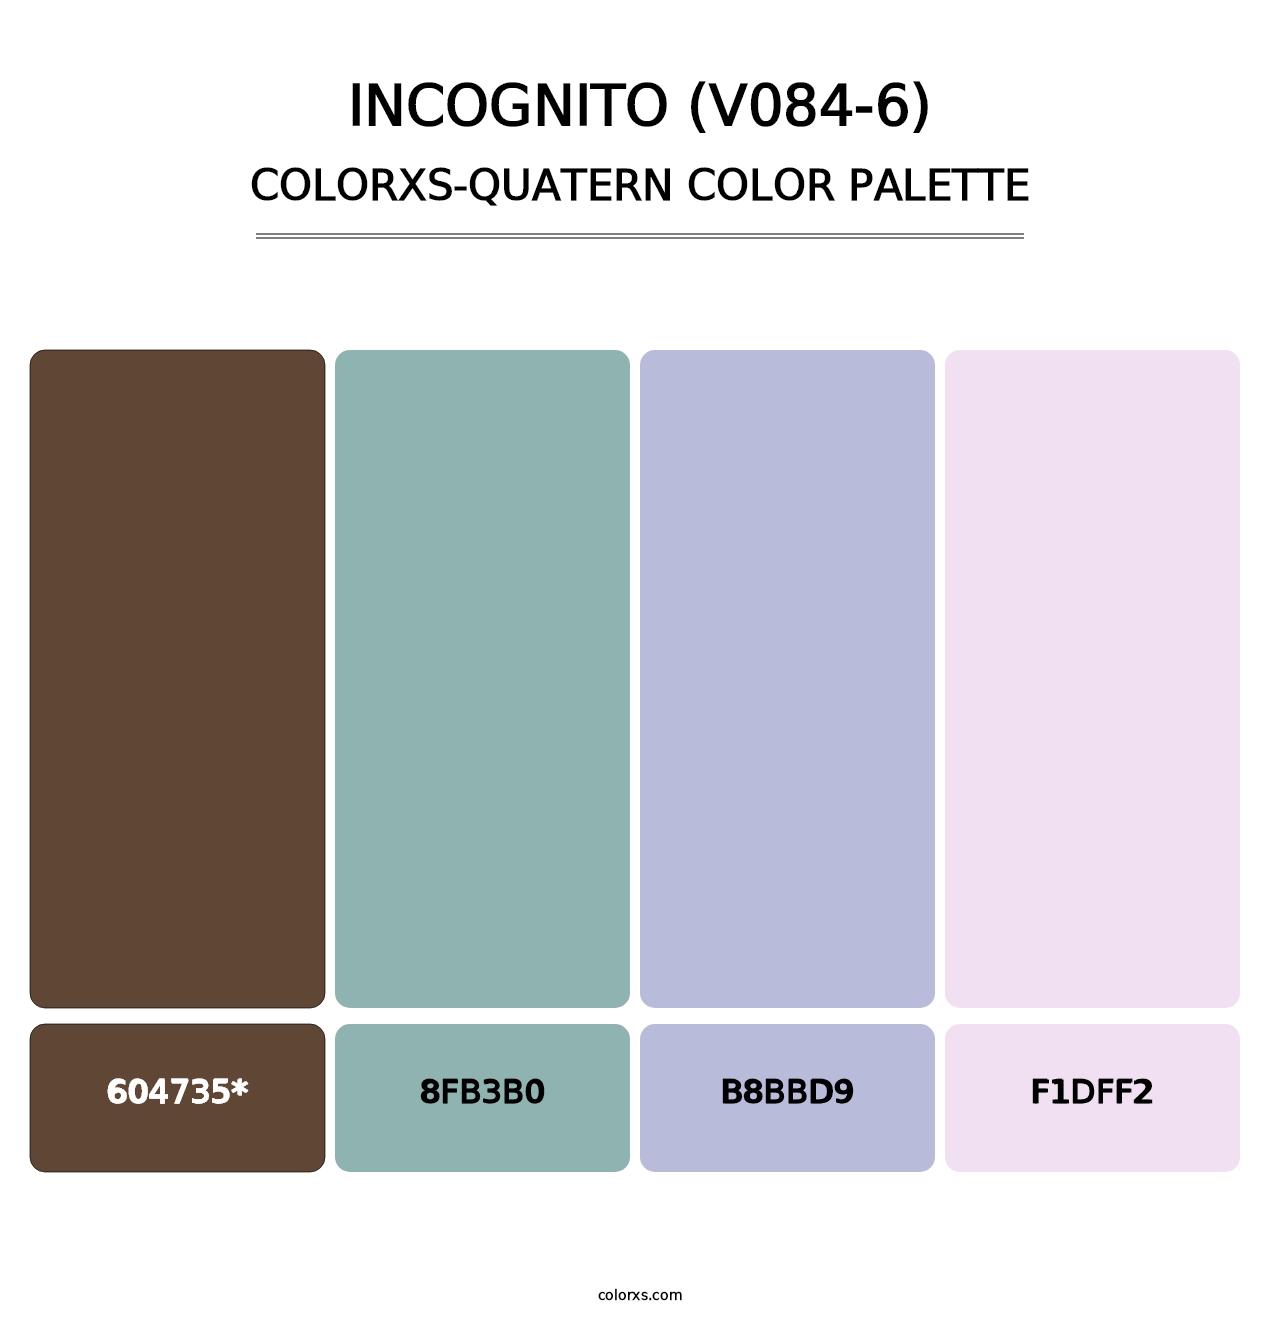 Incognito (V084-6) - Colorxs Quatern Palette